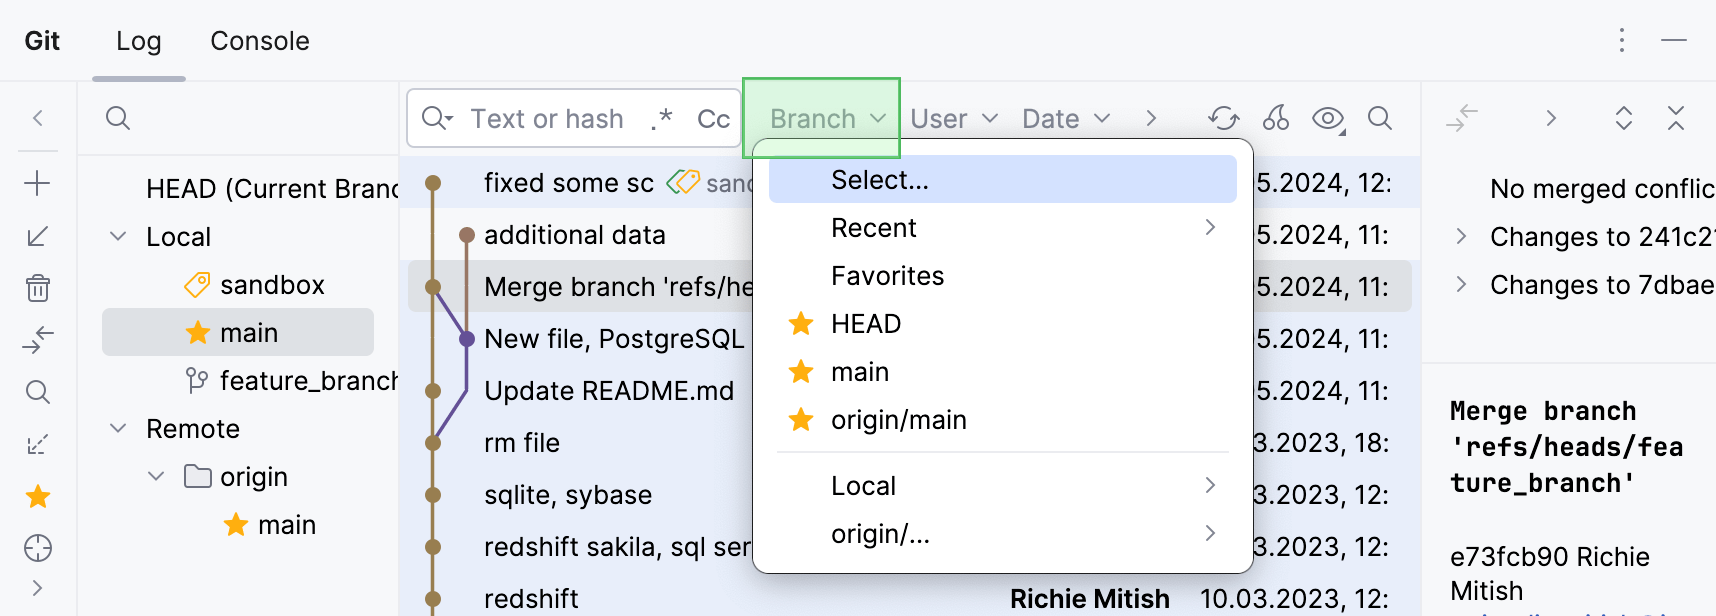 Filter log by branch